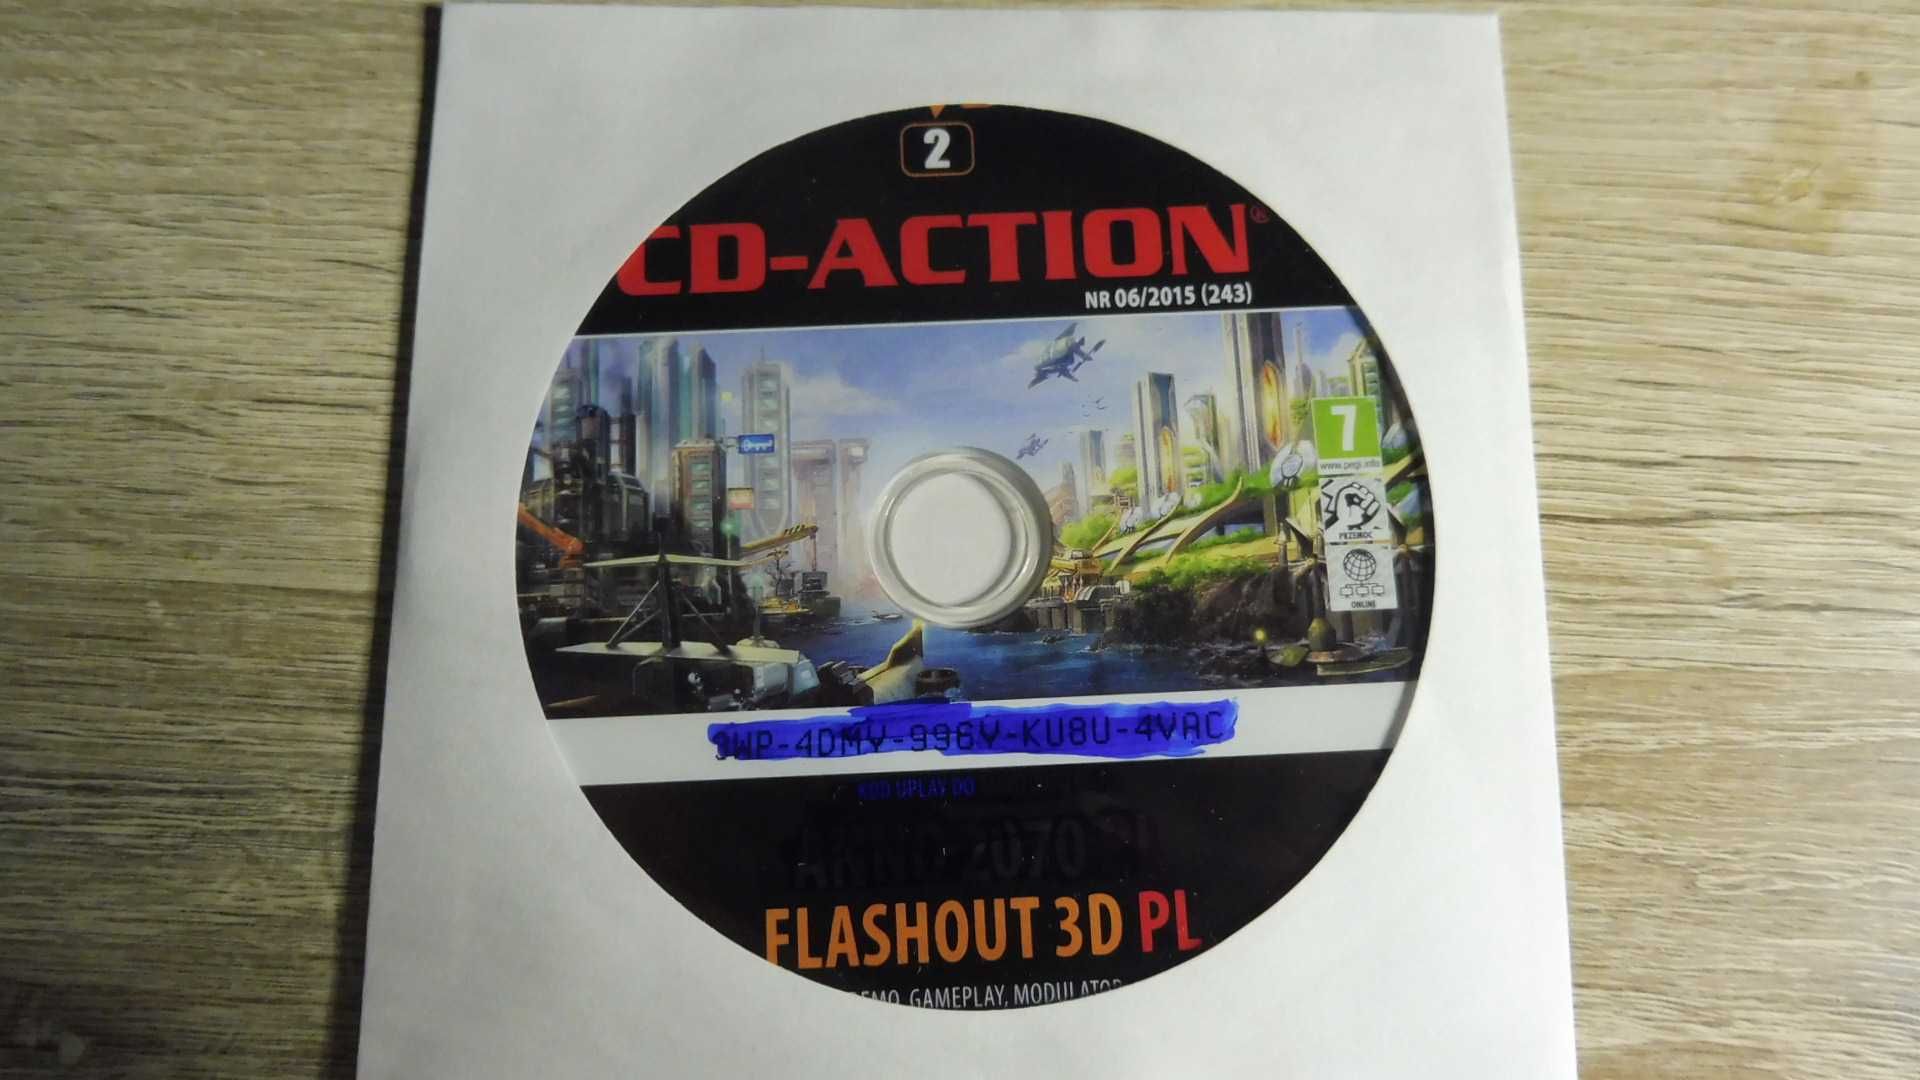 CD Action 06/2015 (243) - DVD 2 - Flashout 3D PL